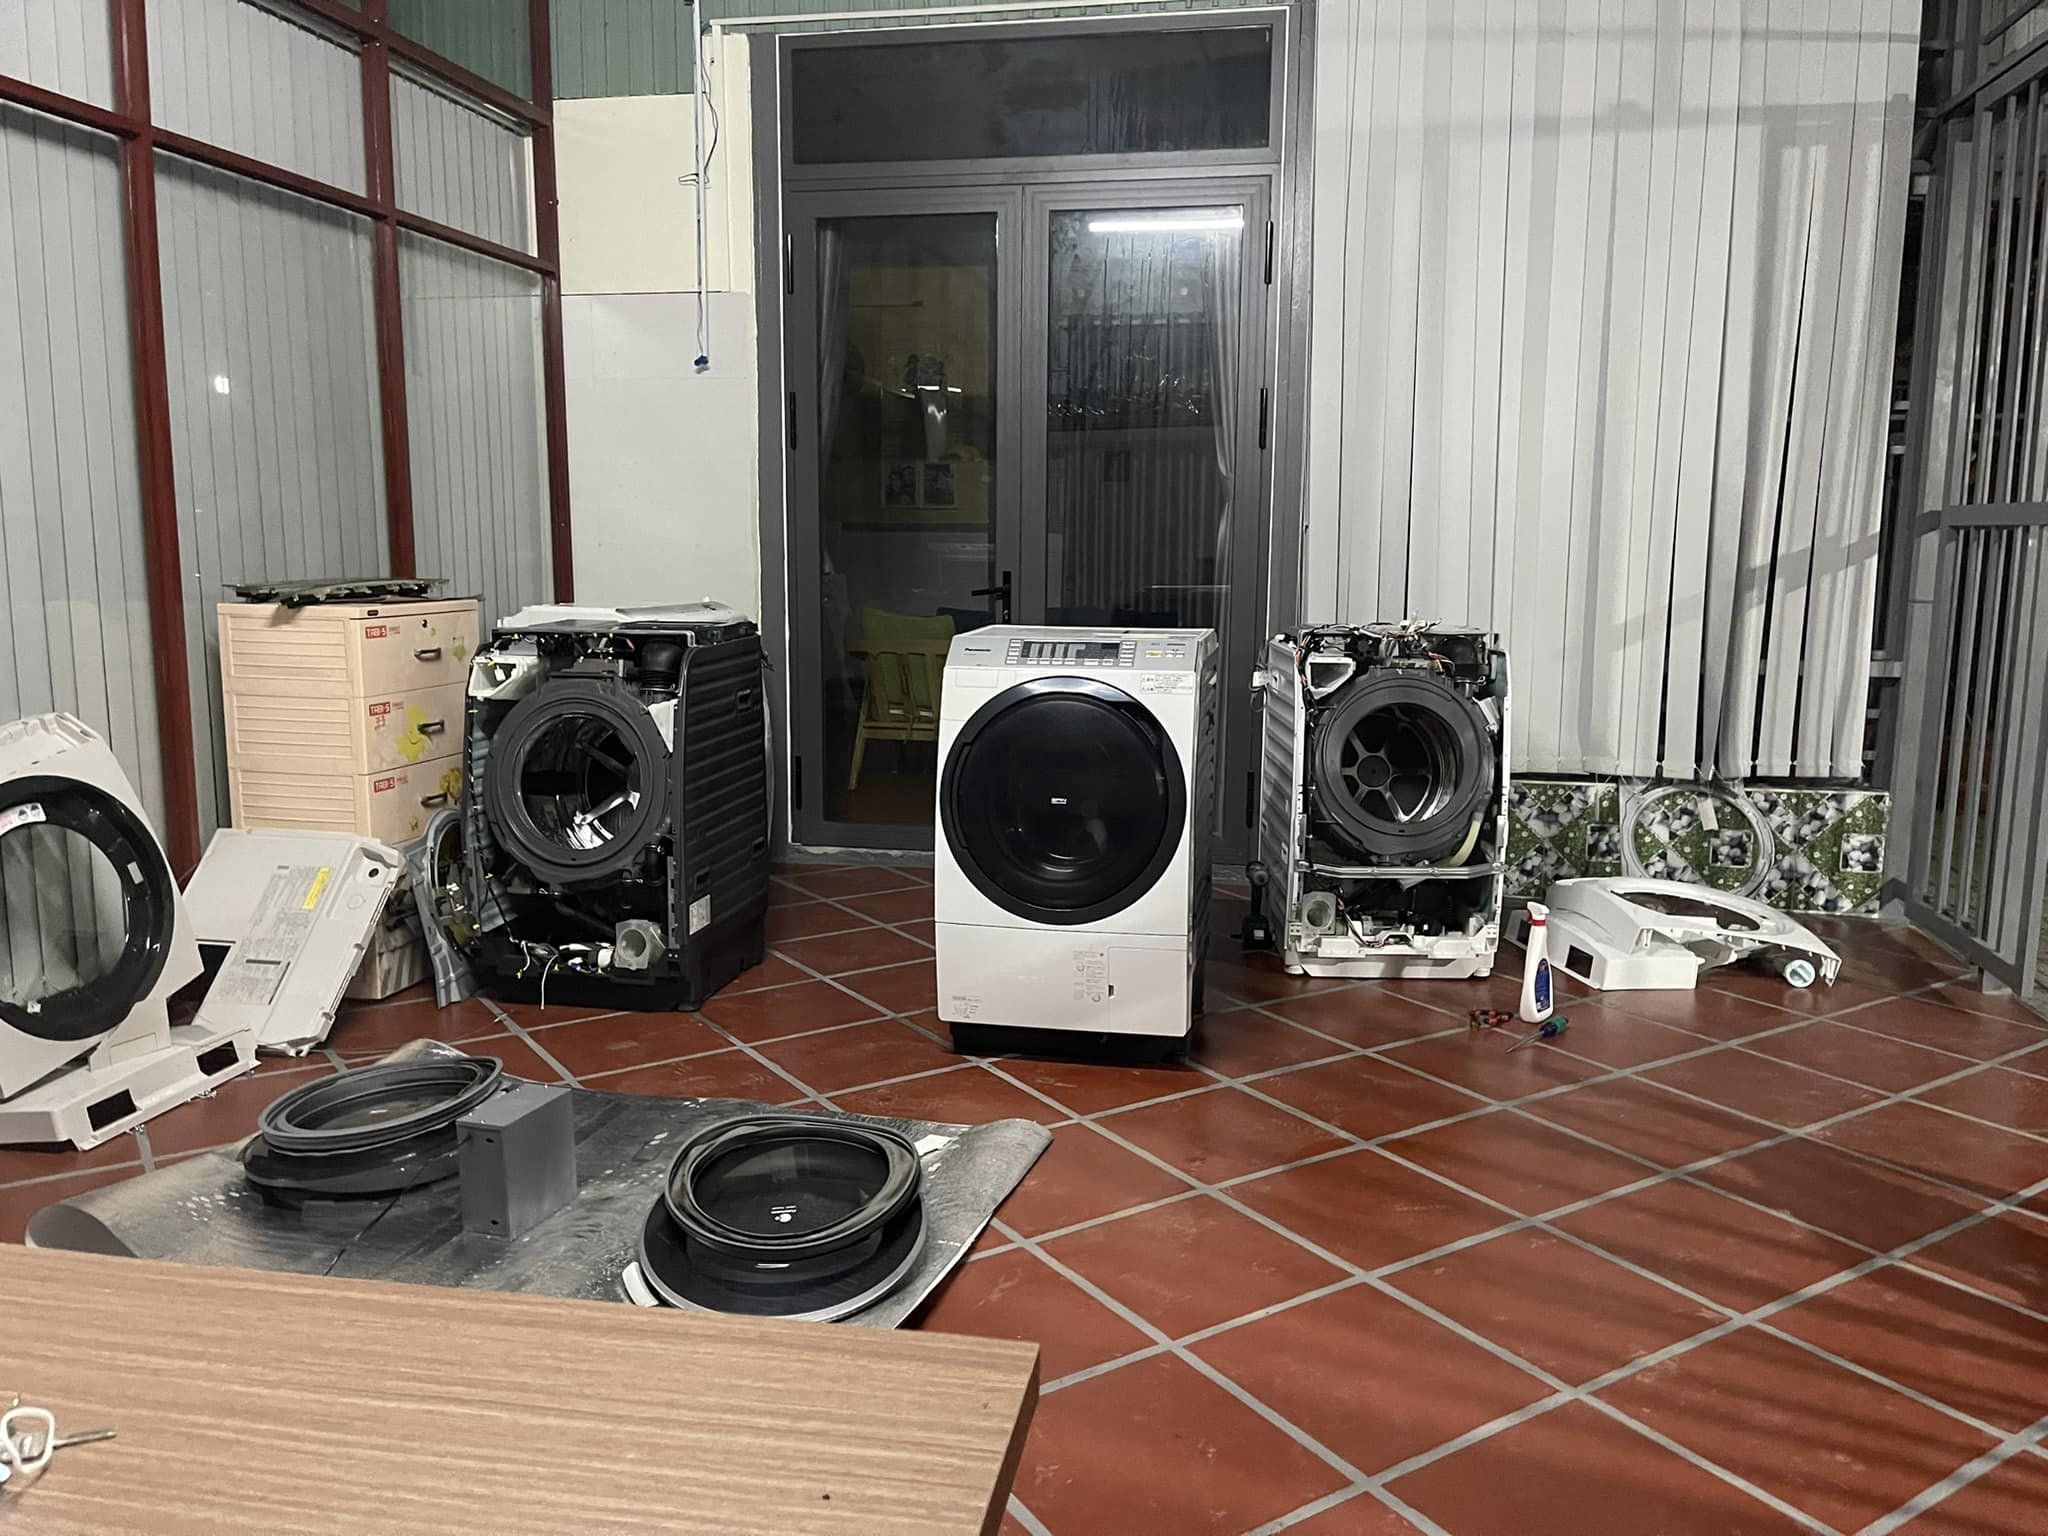 Trung tâm sửa chữa máy giặt tại Thị trấn Minh Tân Hải Dương